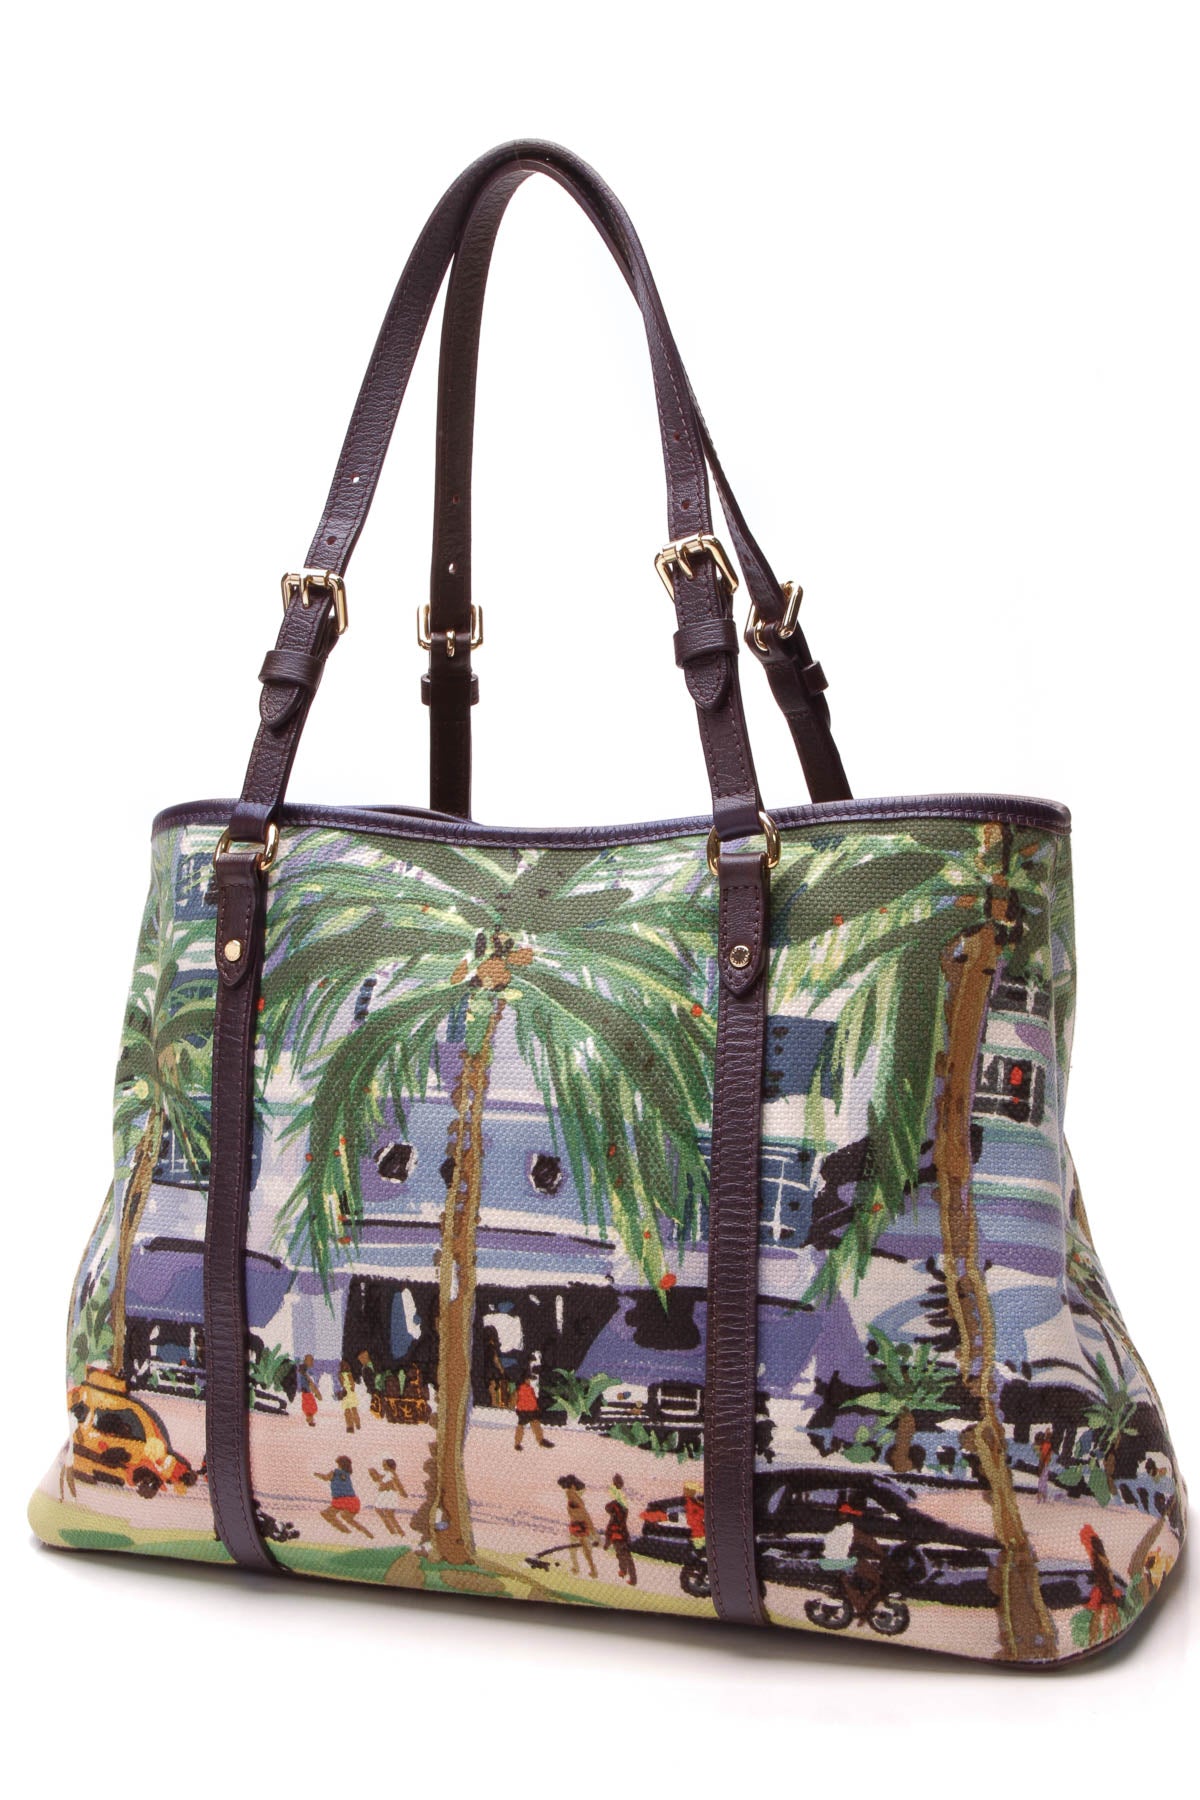 Louis Vuitton Ailleurs Cabas PM Bag - Promenade – Couture USA